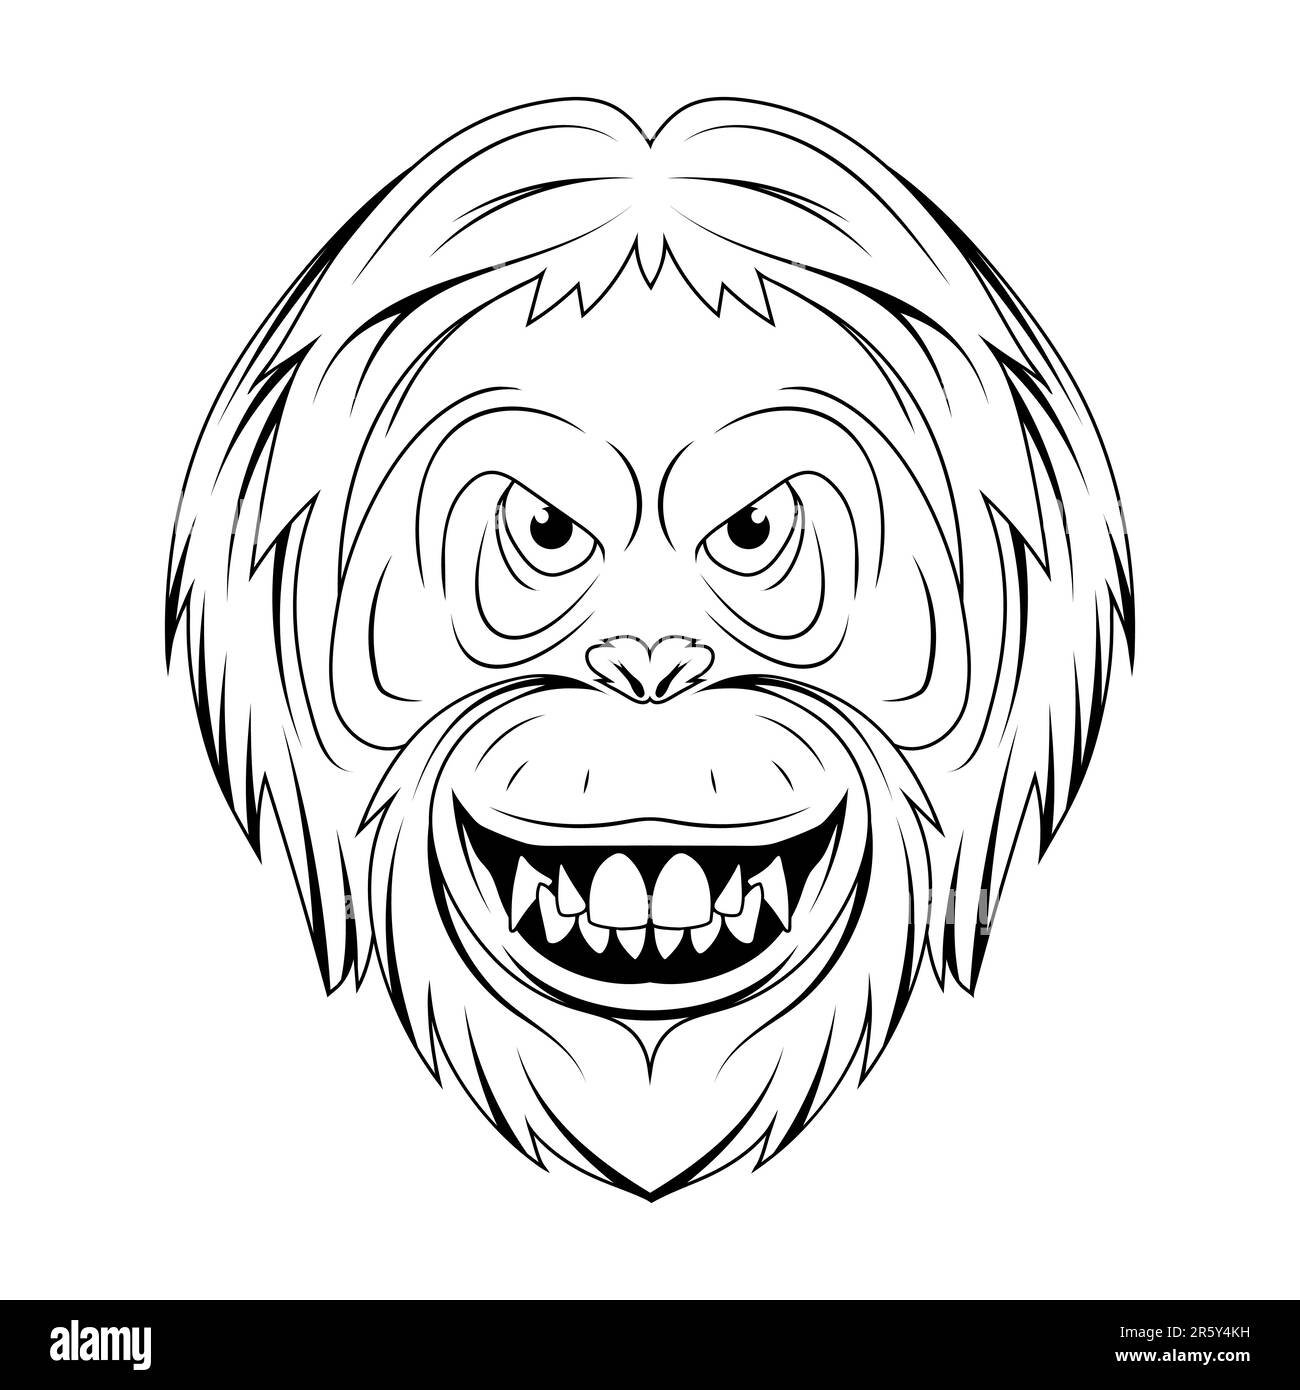 Orang-utan. Illustrazione vettoriale di una faccia di scimmia di schizzo. Ritratto animale selvatico in zoo. Illustrazione Vettoriale